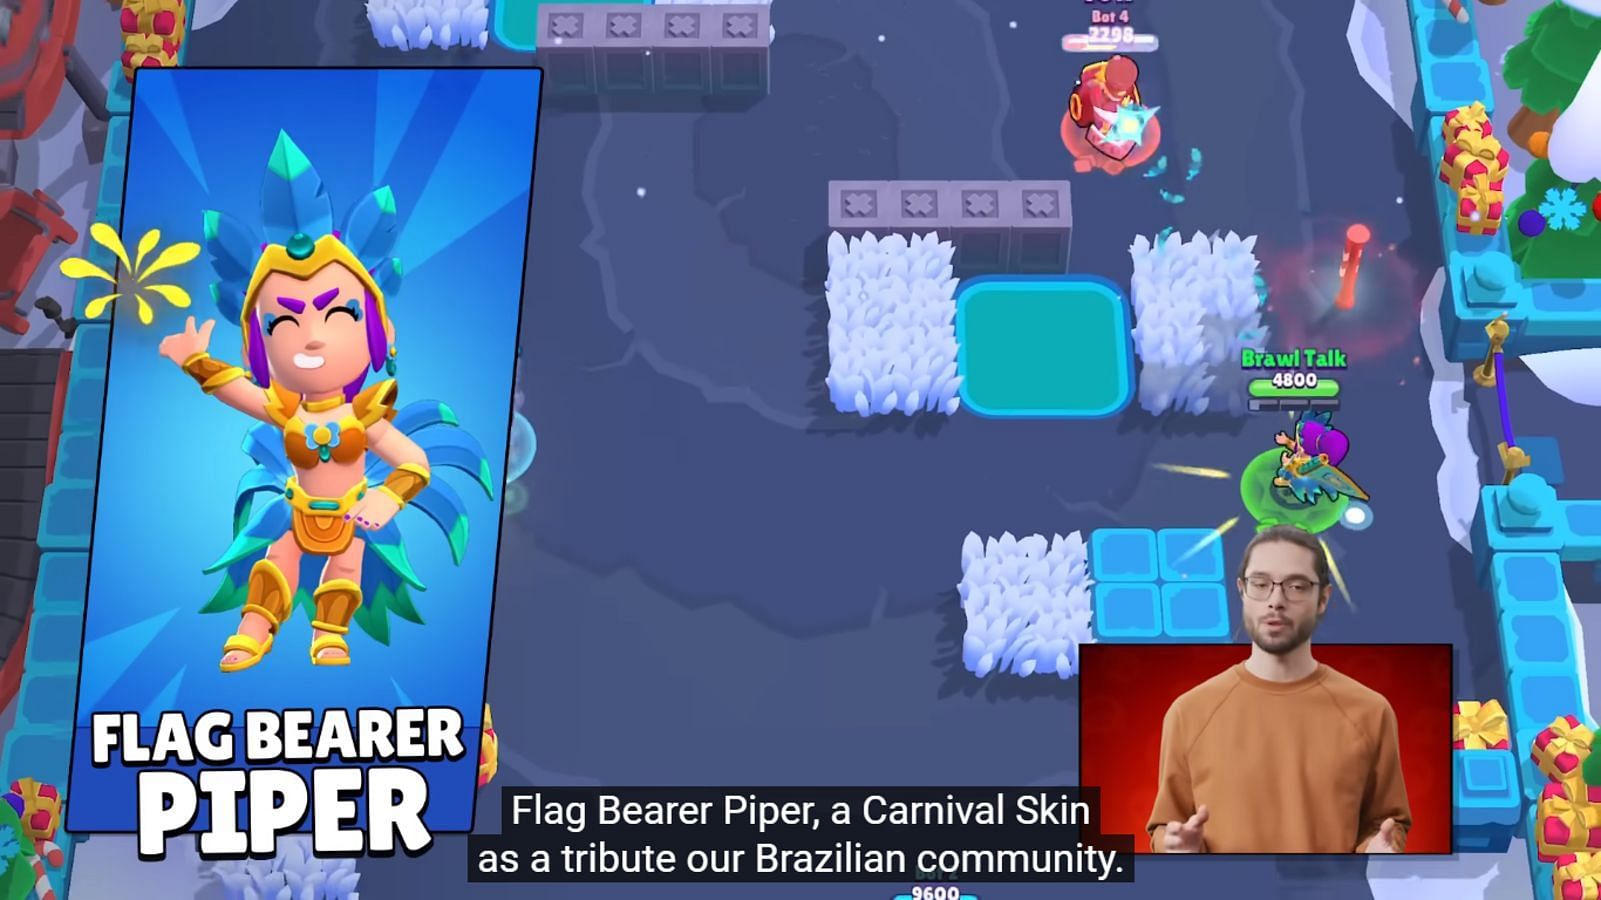 Flag Bearer Piper in Brawl Stars (Image via Supercell)